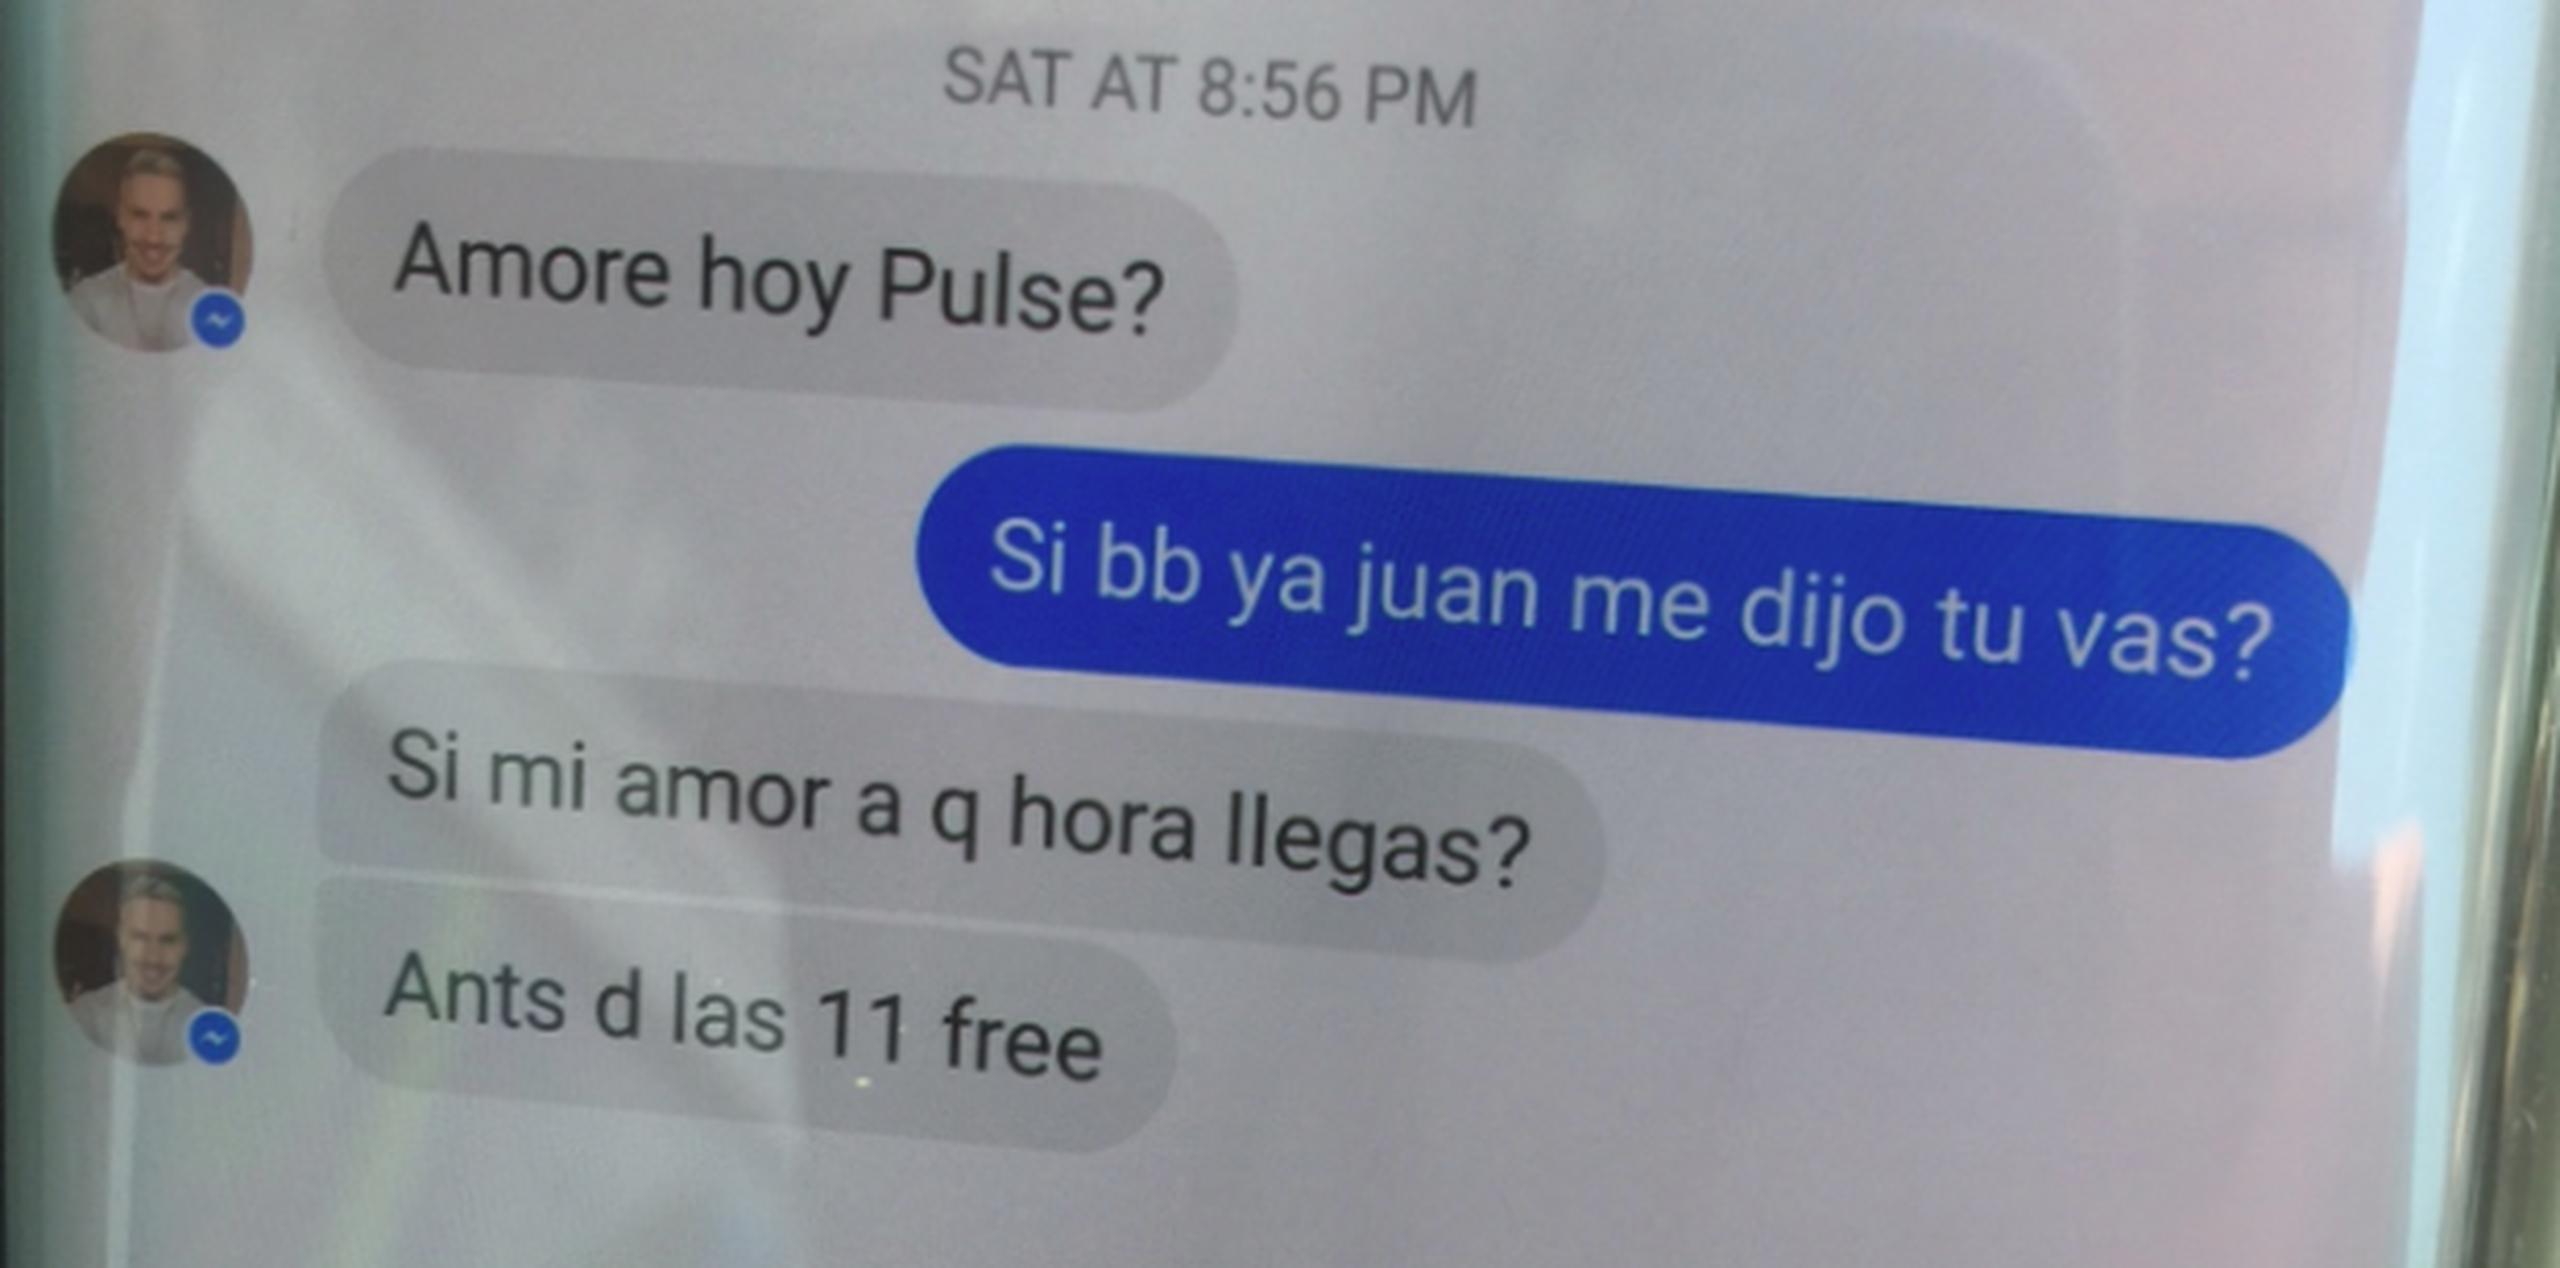 La mayagüezana compartió los mensajes de texto que tuvo para cuadrar el jangueo de esa noche. (jayson.vazquez@gfrmedia.com)